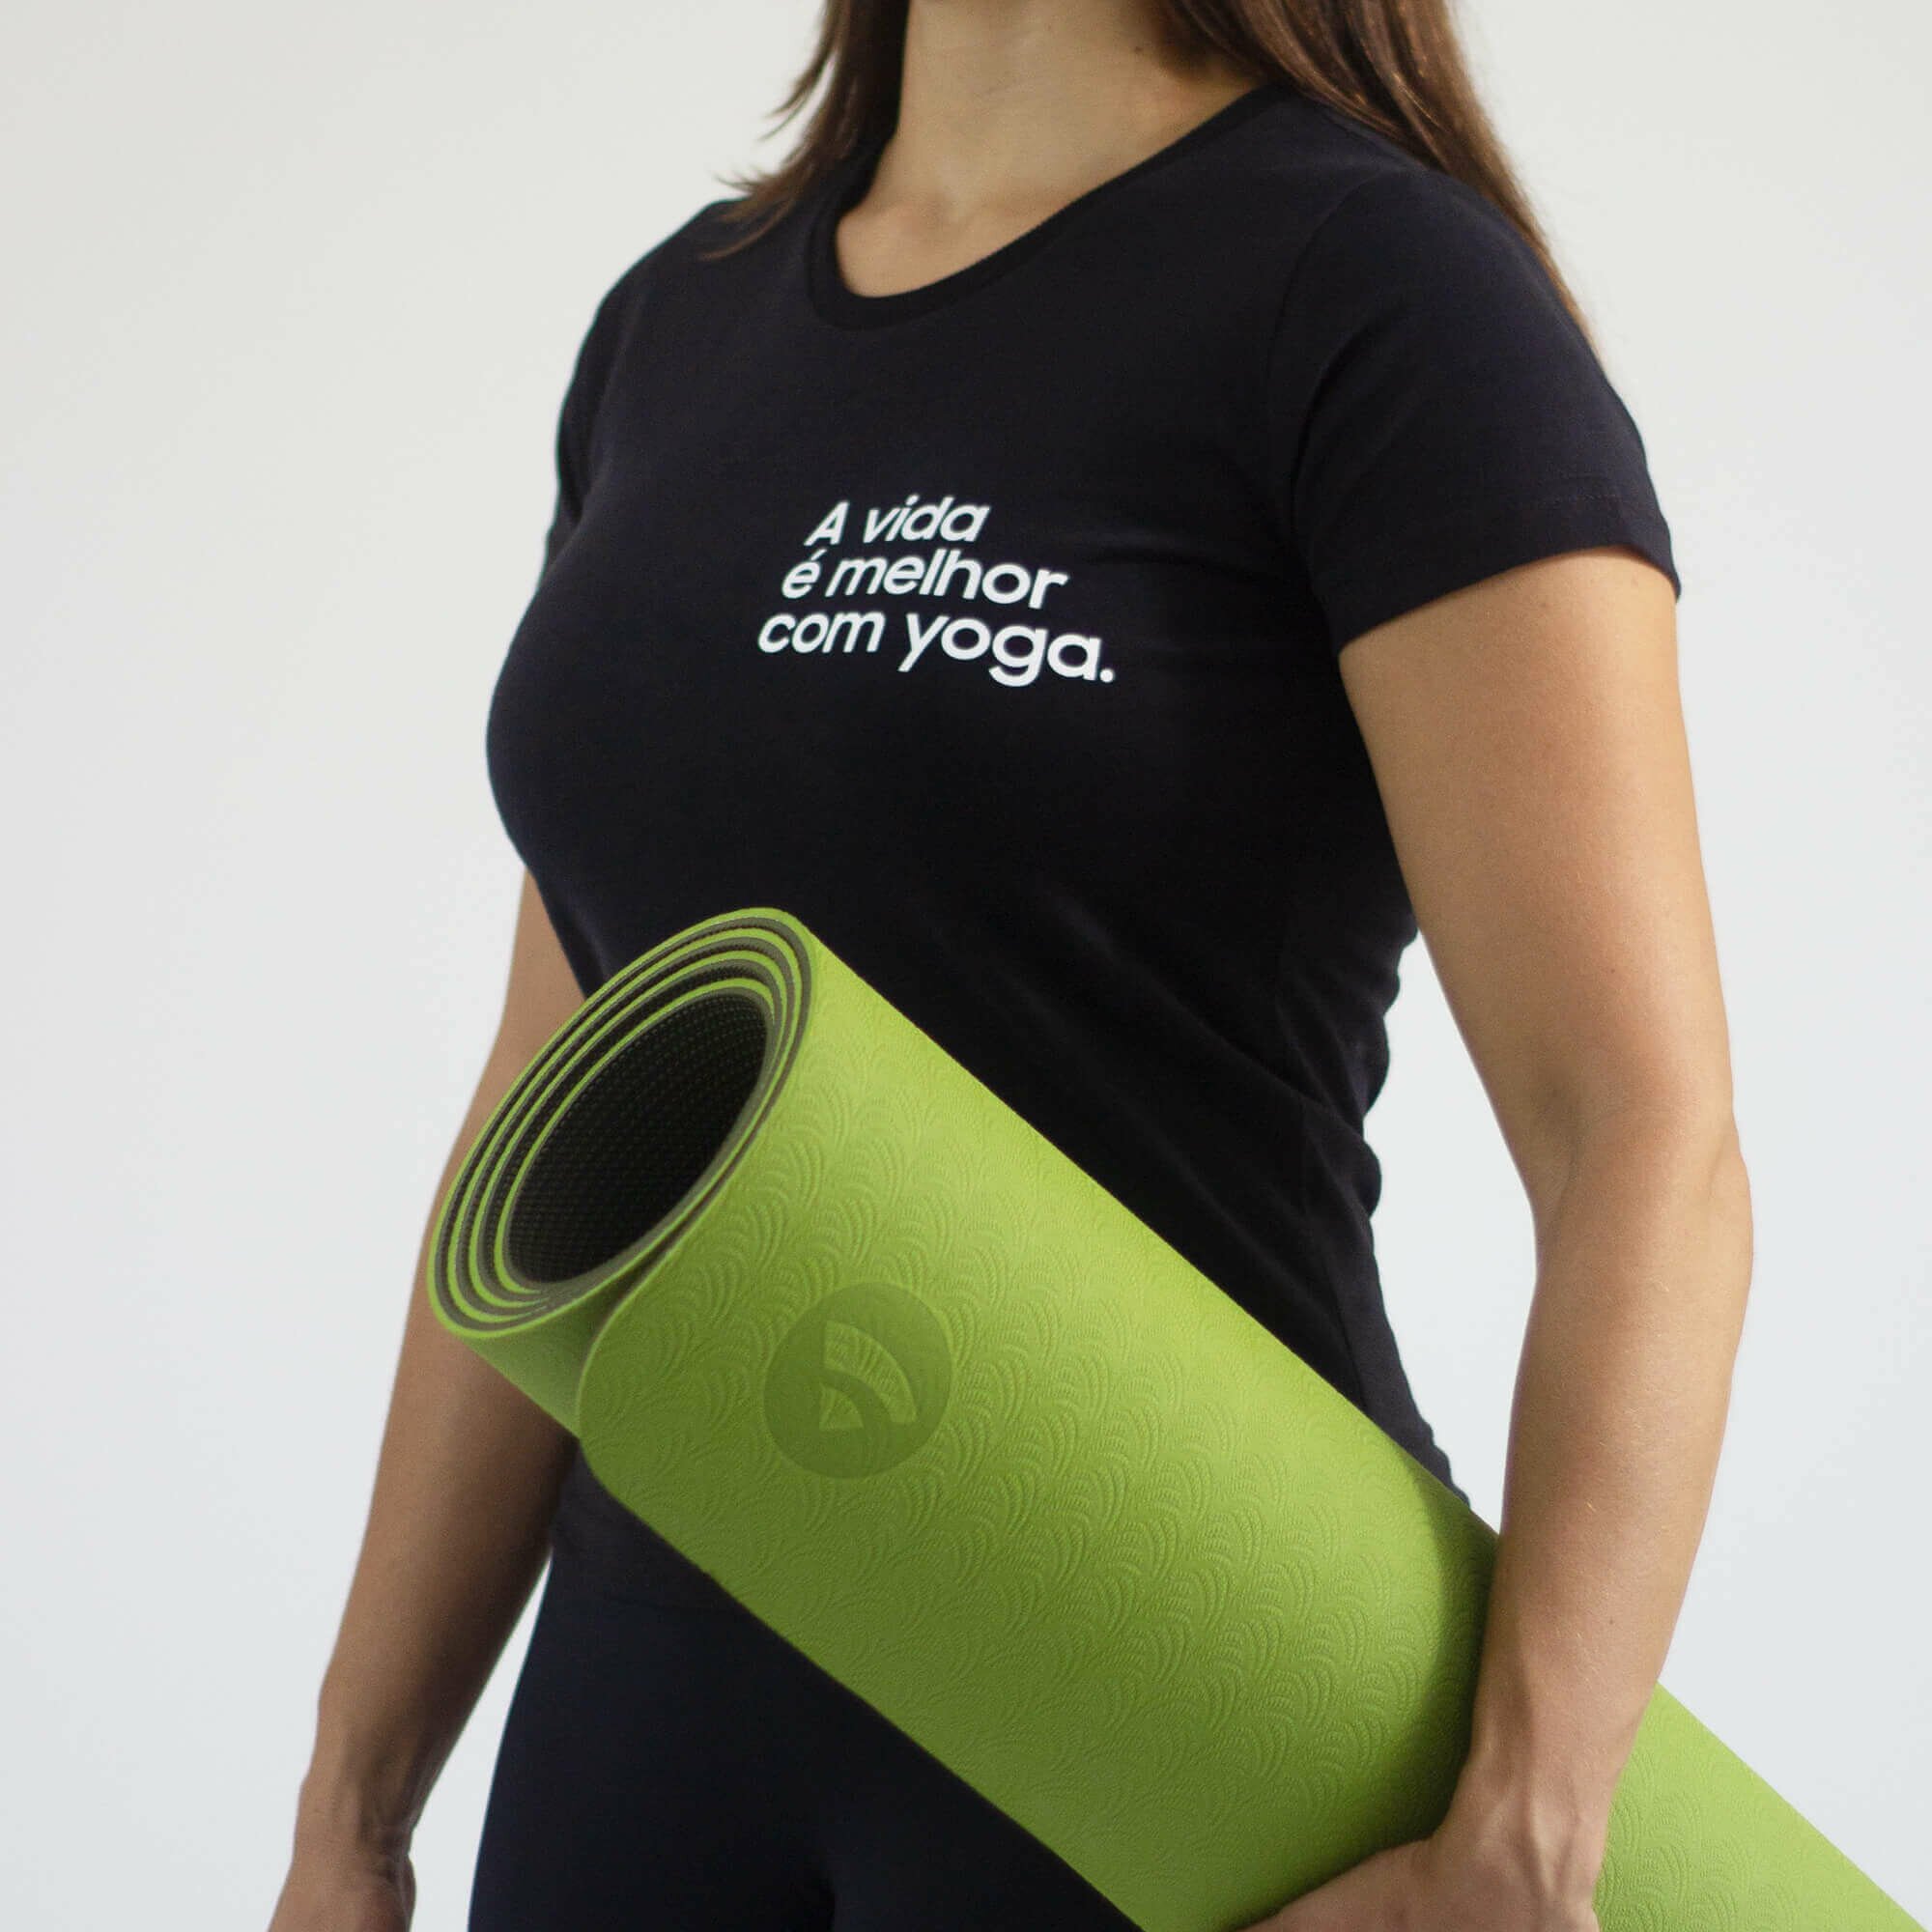 Camiseta ecológica para Yoga l Medite l Yogateria